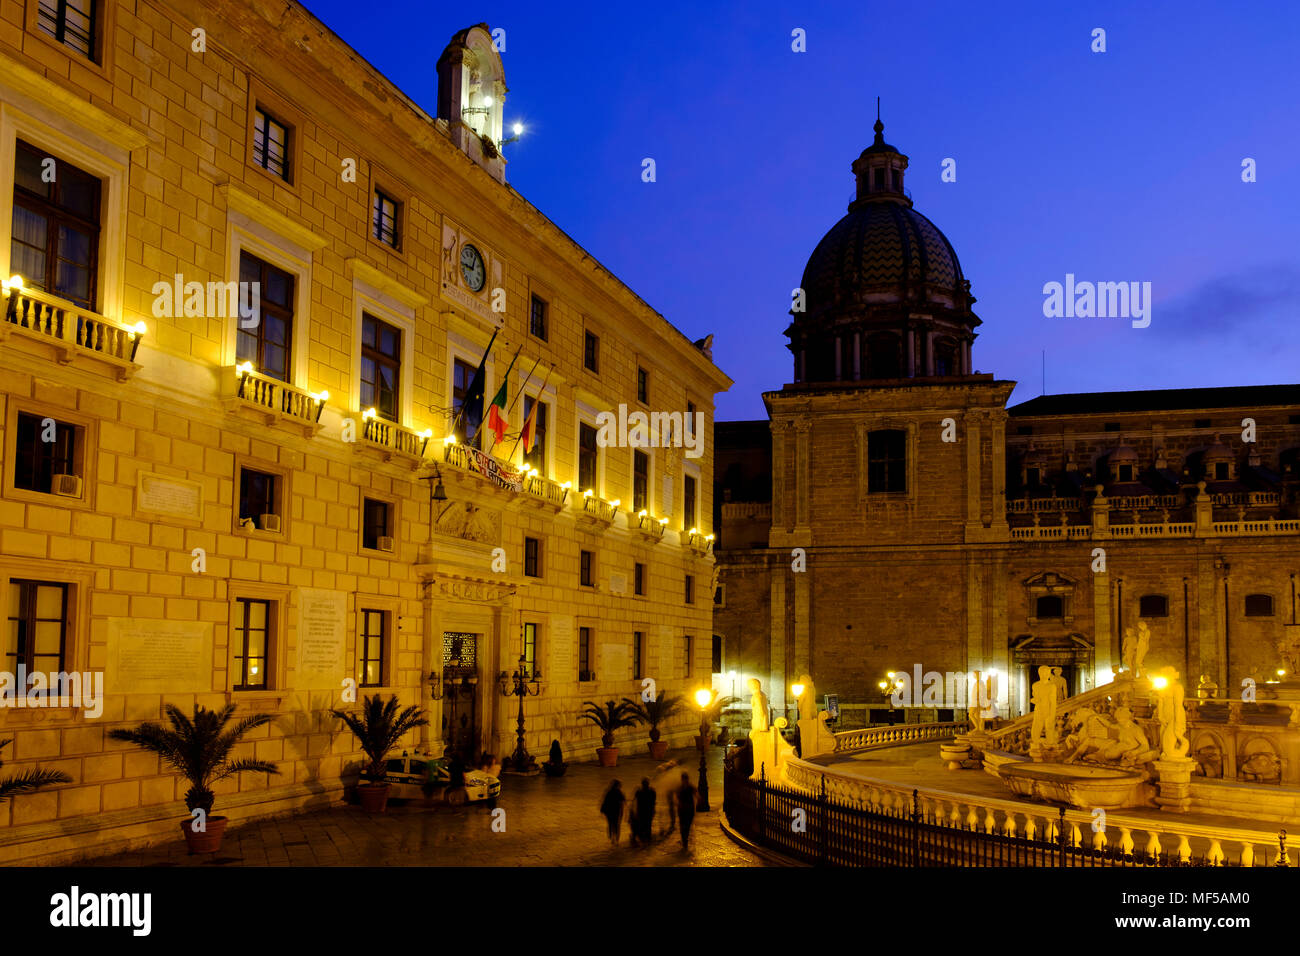 Fontana Pretoria, mit Palazzo Pretorio und San Giuseppe dei Teatini in der Dämmerung, Piazza Pretoria, Palermo, Sizilien, Italien Foto Stock